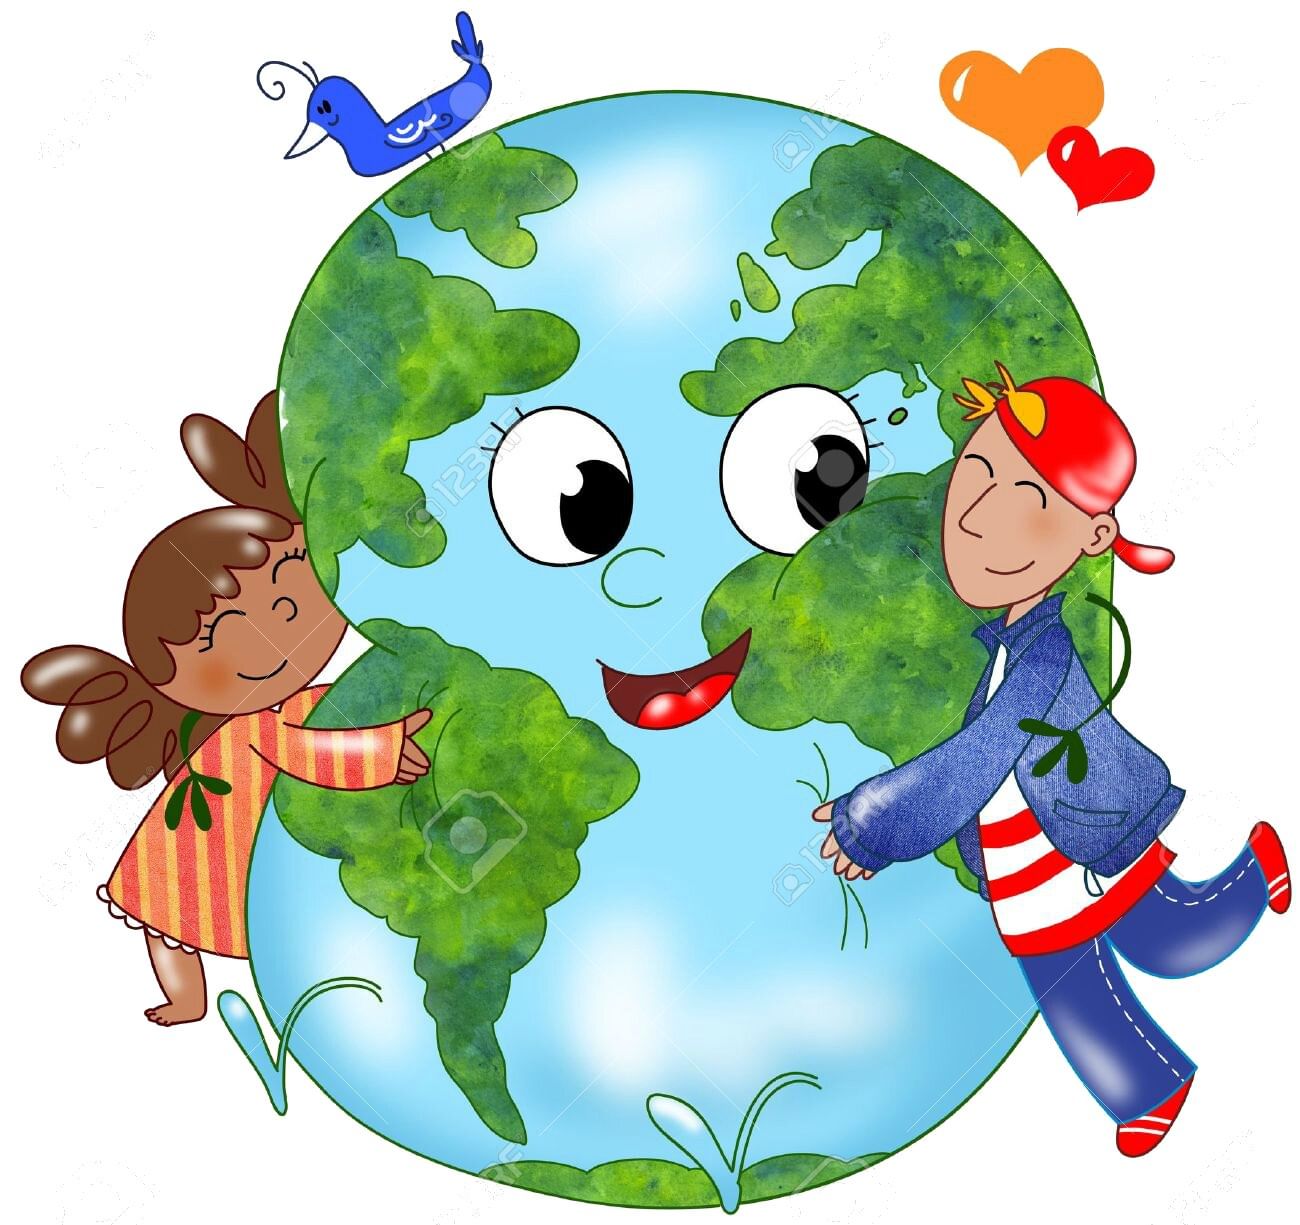 Оберегать землю. Наш общий дом земля. Детям об экологии. Планета земля для детей. Экология для малышей.